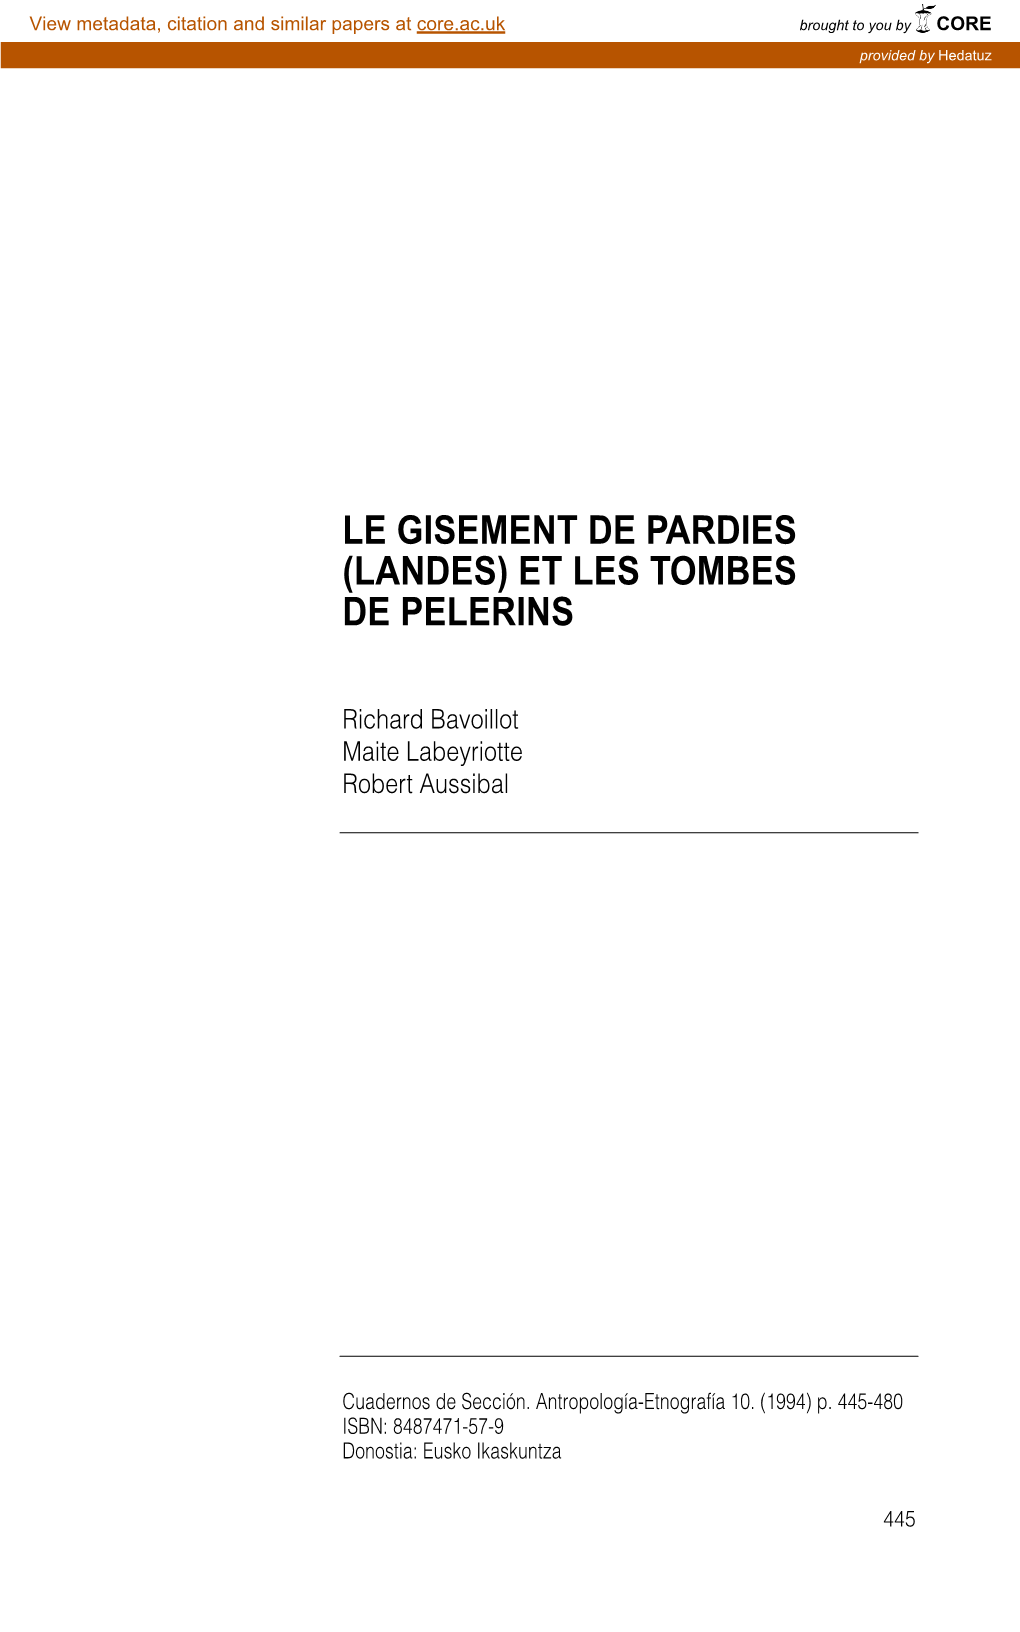 Le Gisement De Pardies (Landes) Et Les Tombes De Pelerins